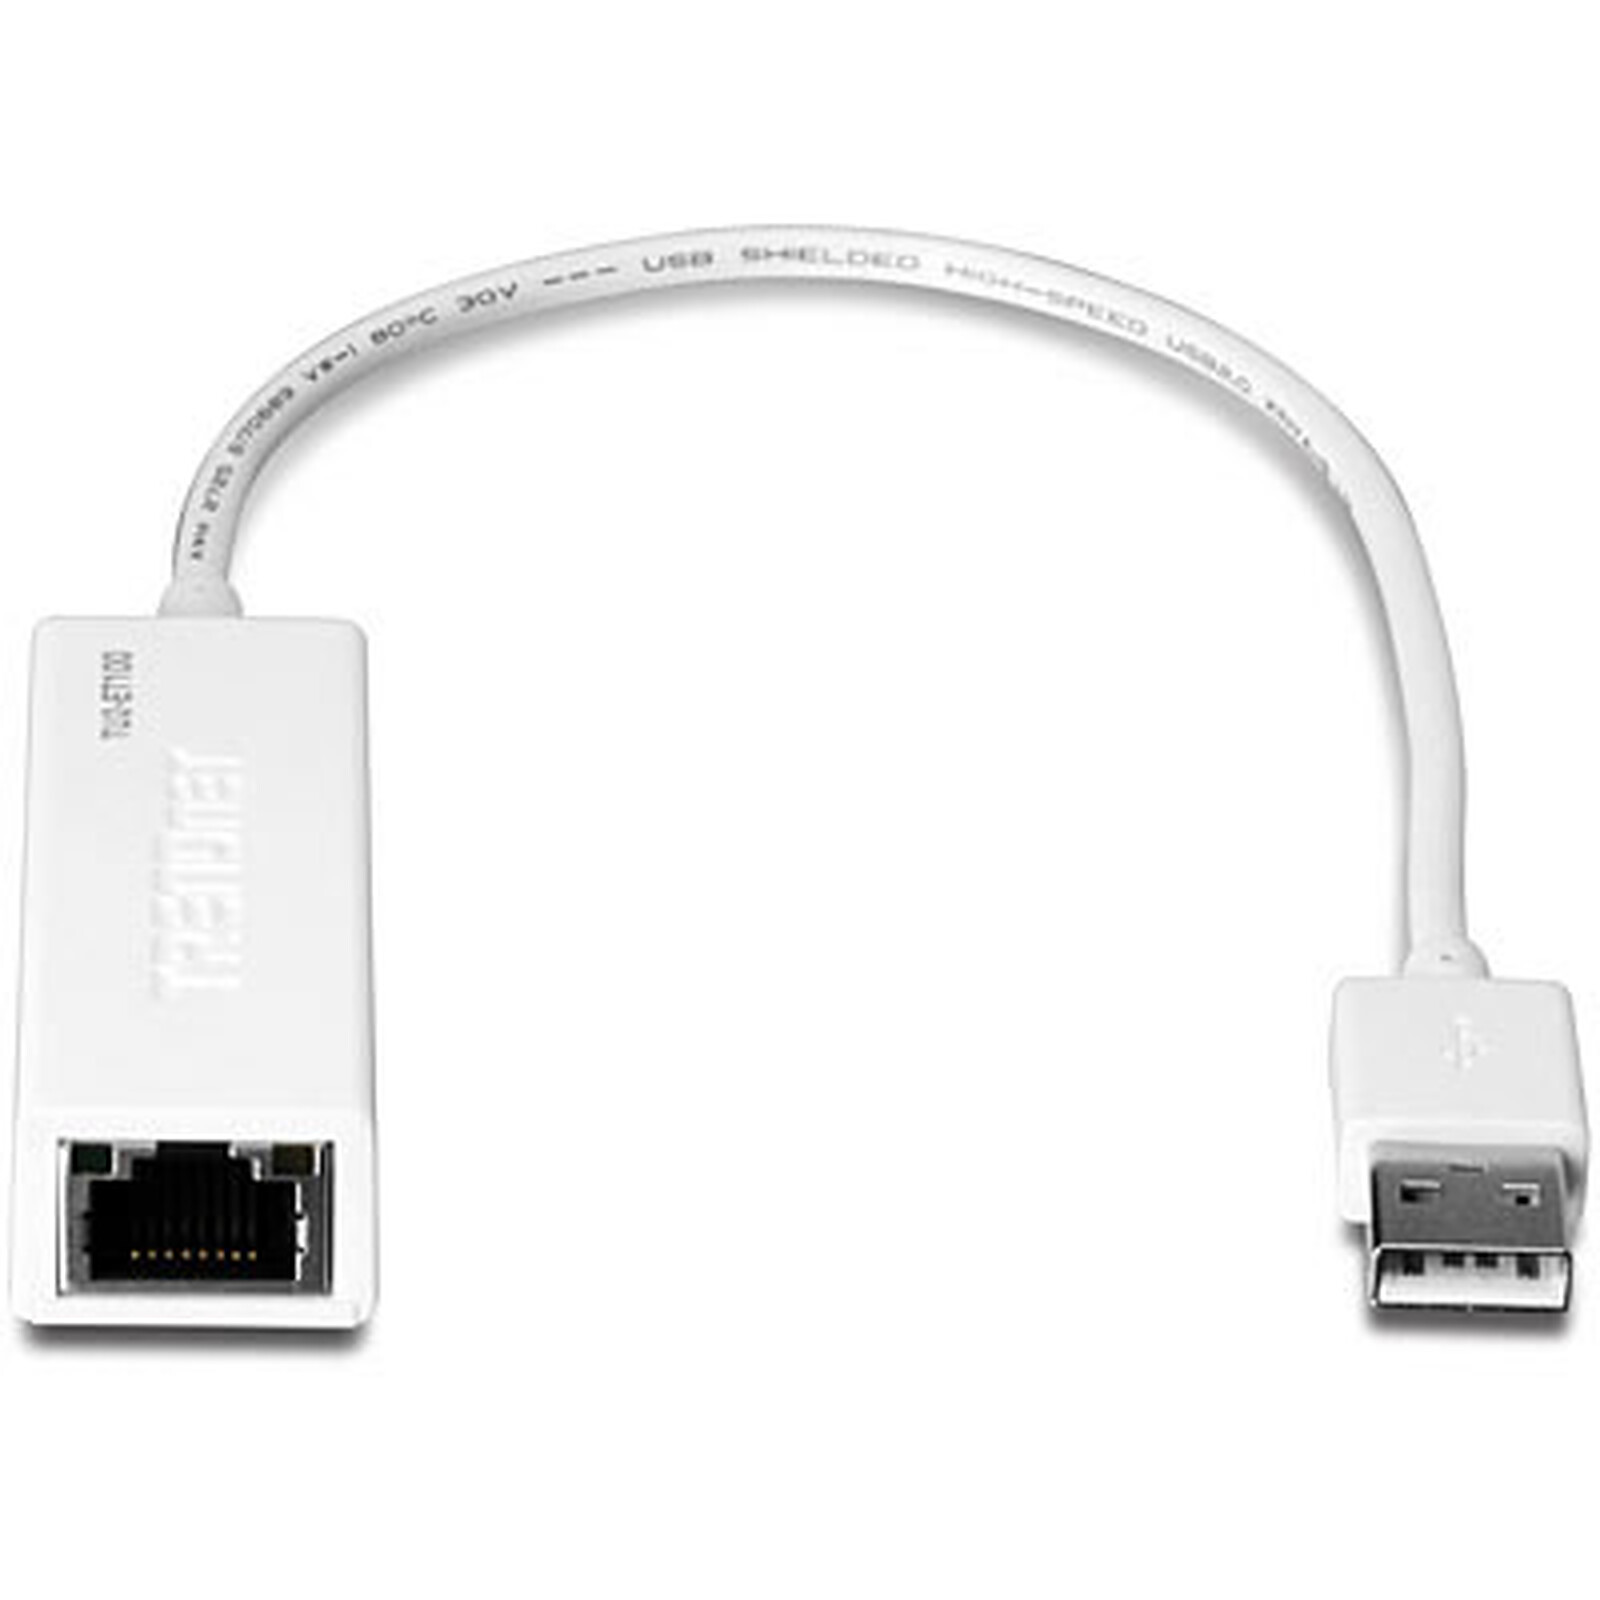 Transmetteur USB sur réseau Ethernet - USB - Garantie 3 ans LDLC